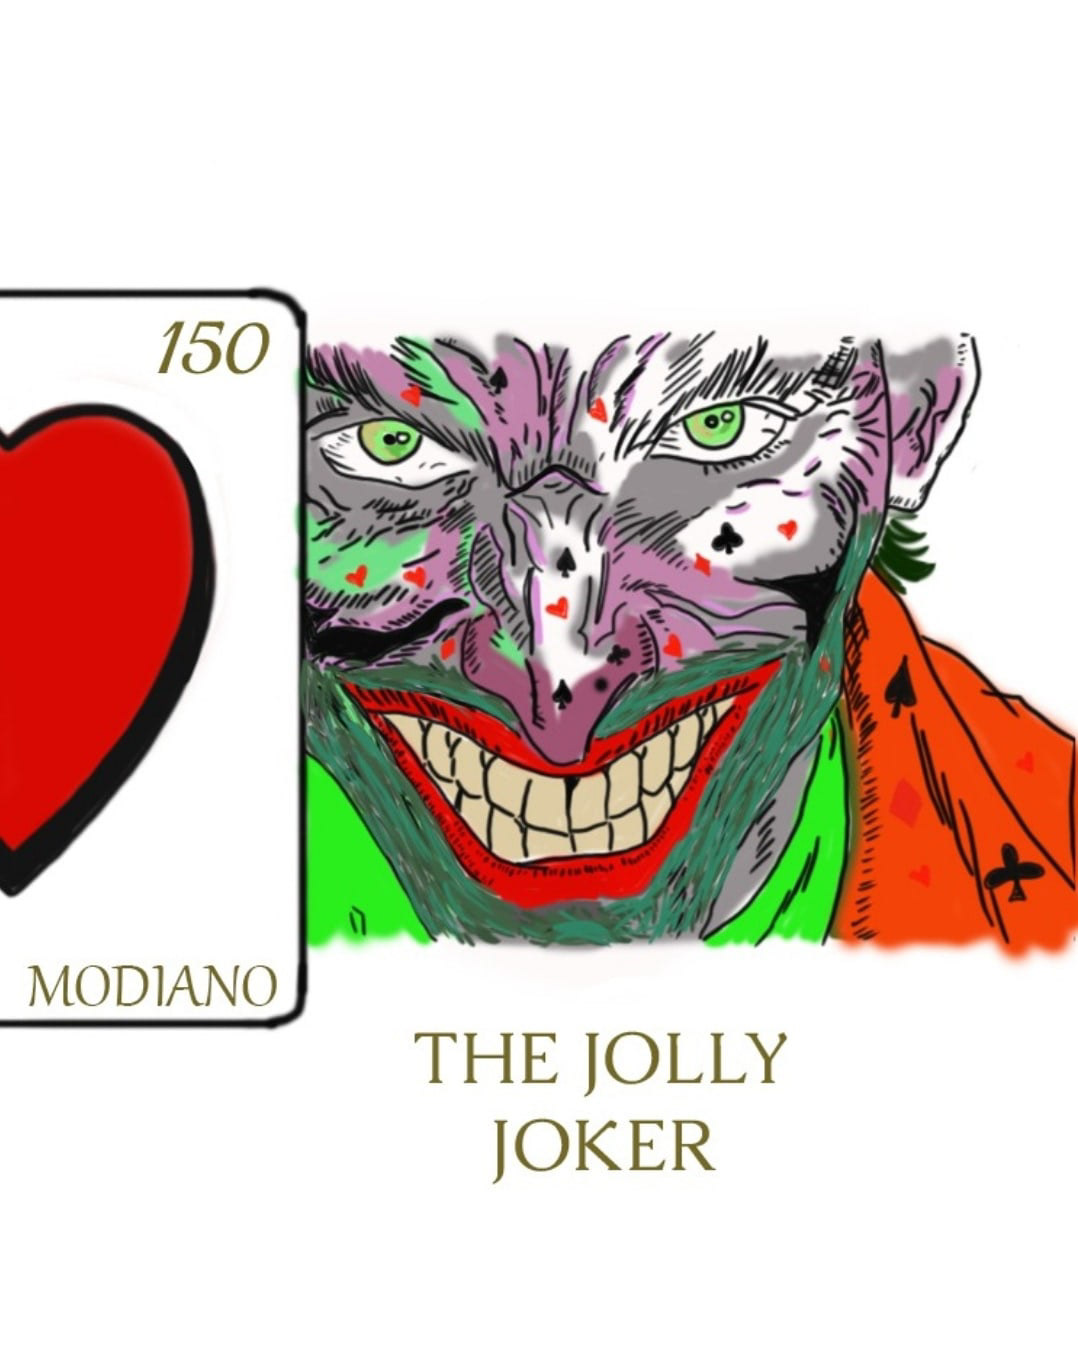 #Modiano
#joker